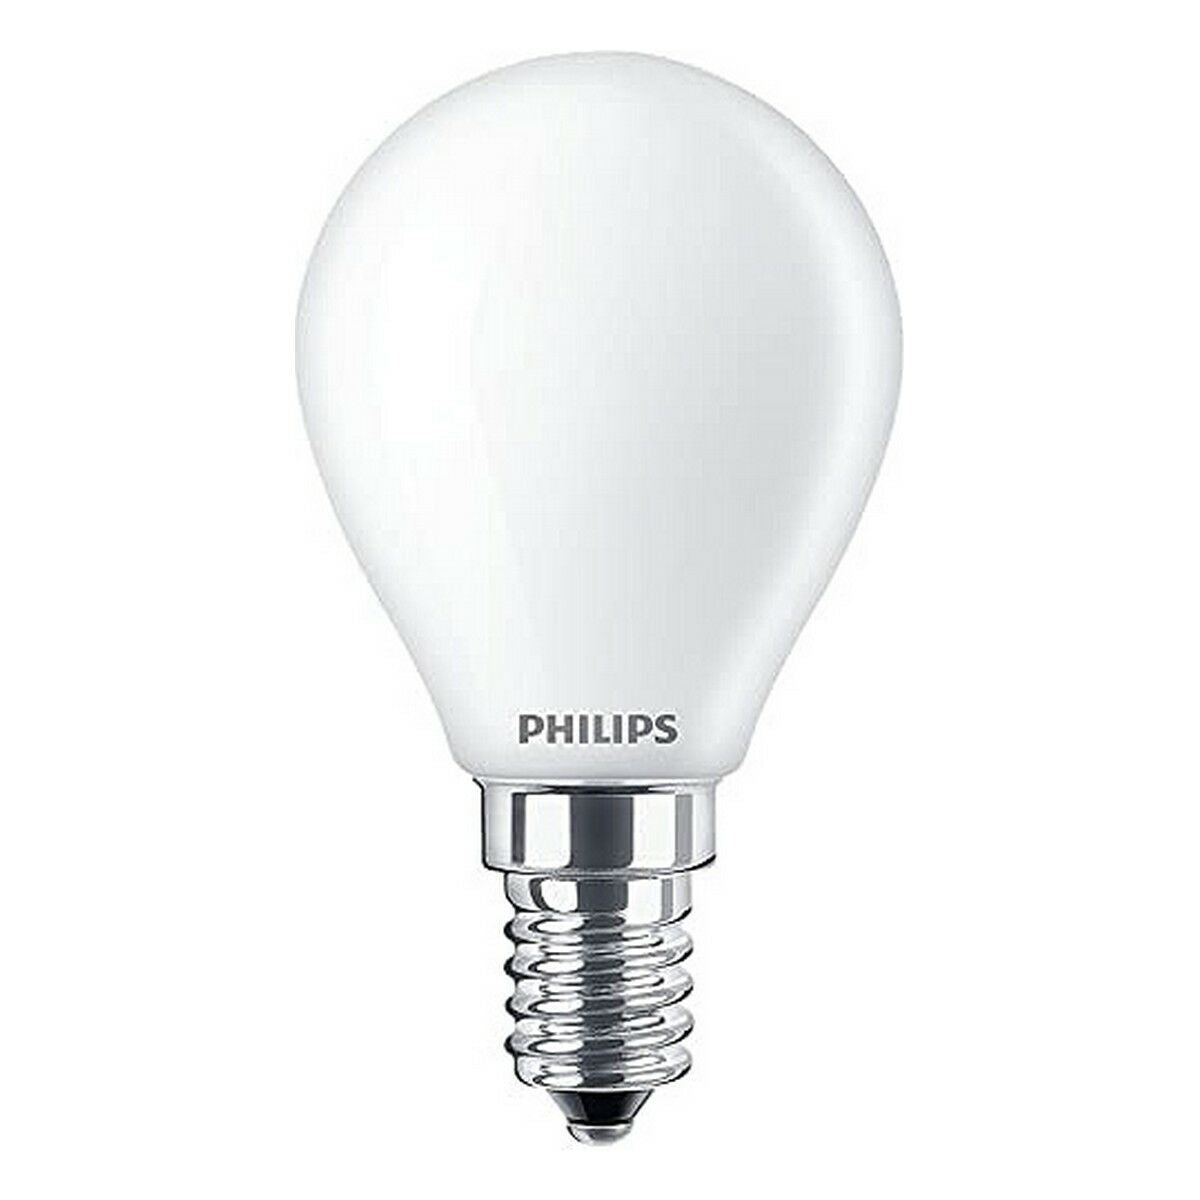 Ledlamp Philips F 4,3 W E14 470 lm 4,5 x 8,2 cm (6500 K)